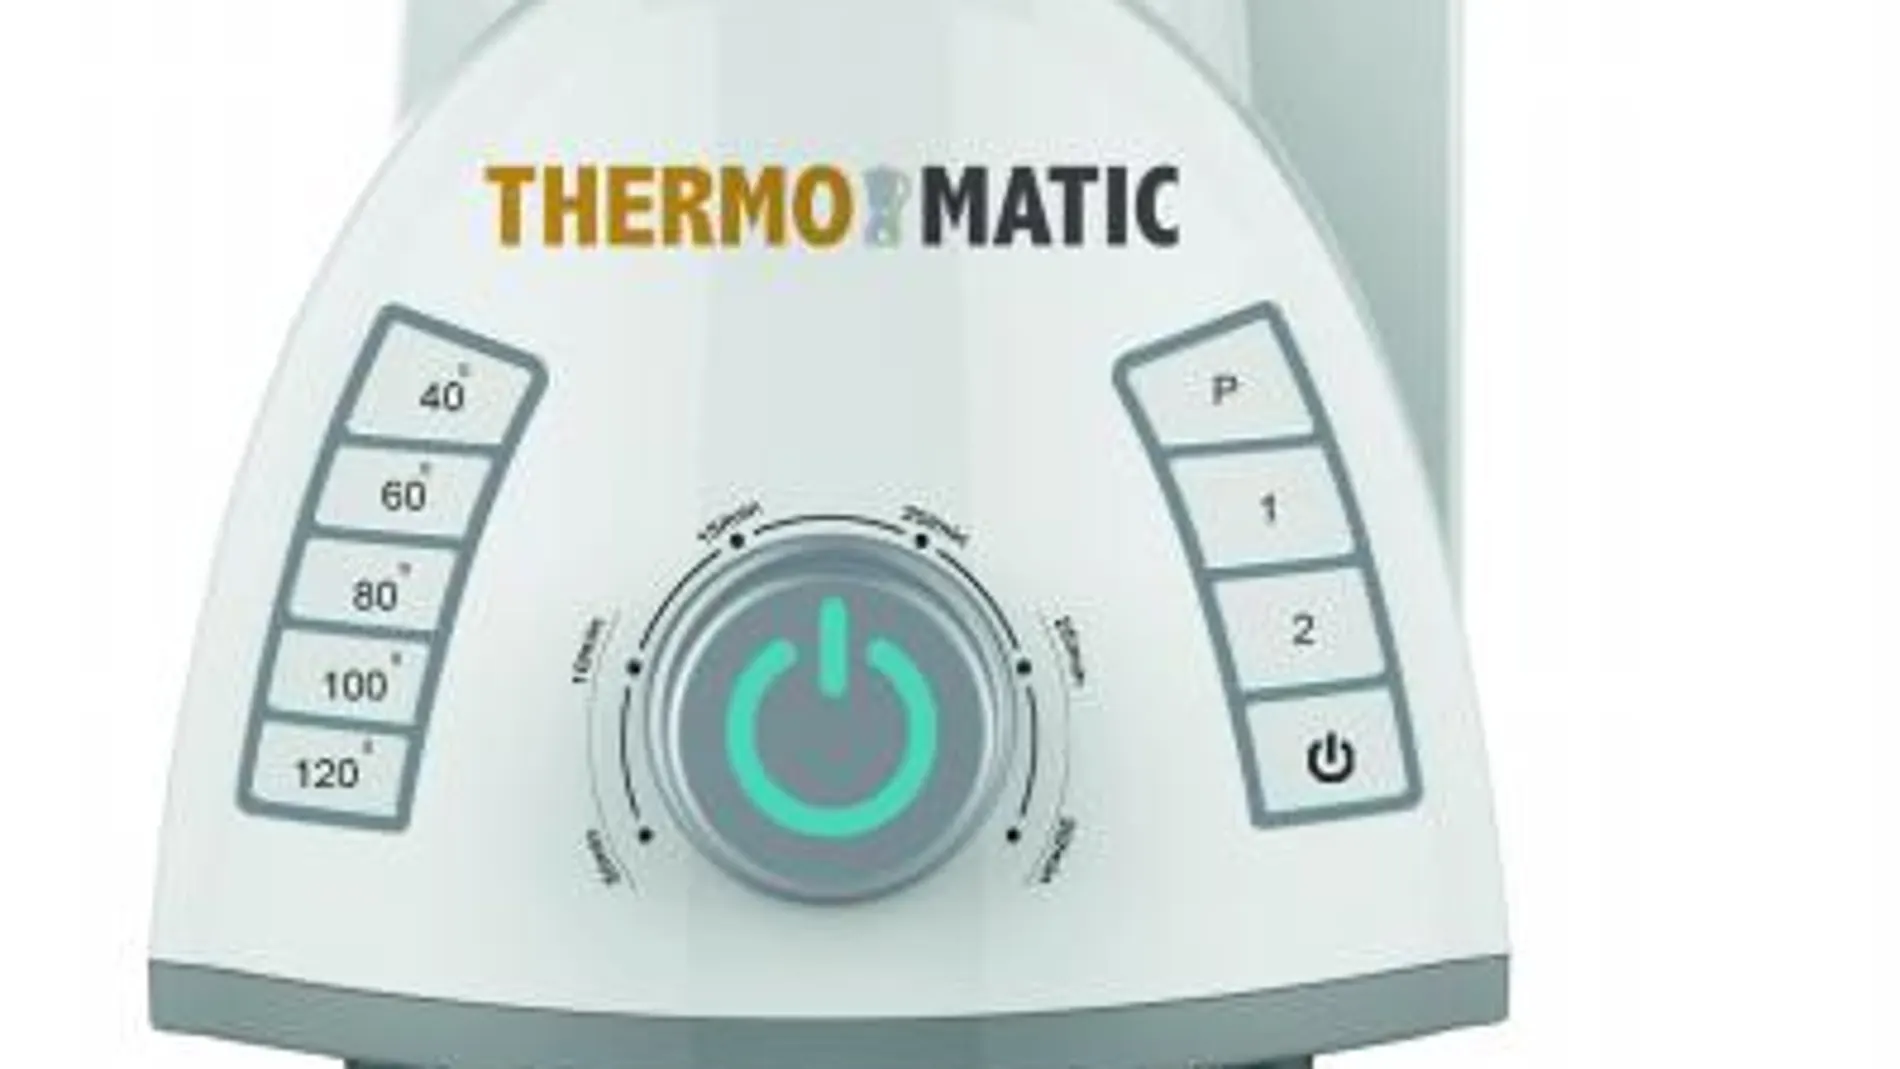 La cartilla para conseguir la «thermomatic», disponible en LARAZÓN.es